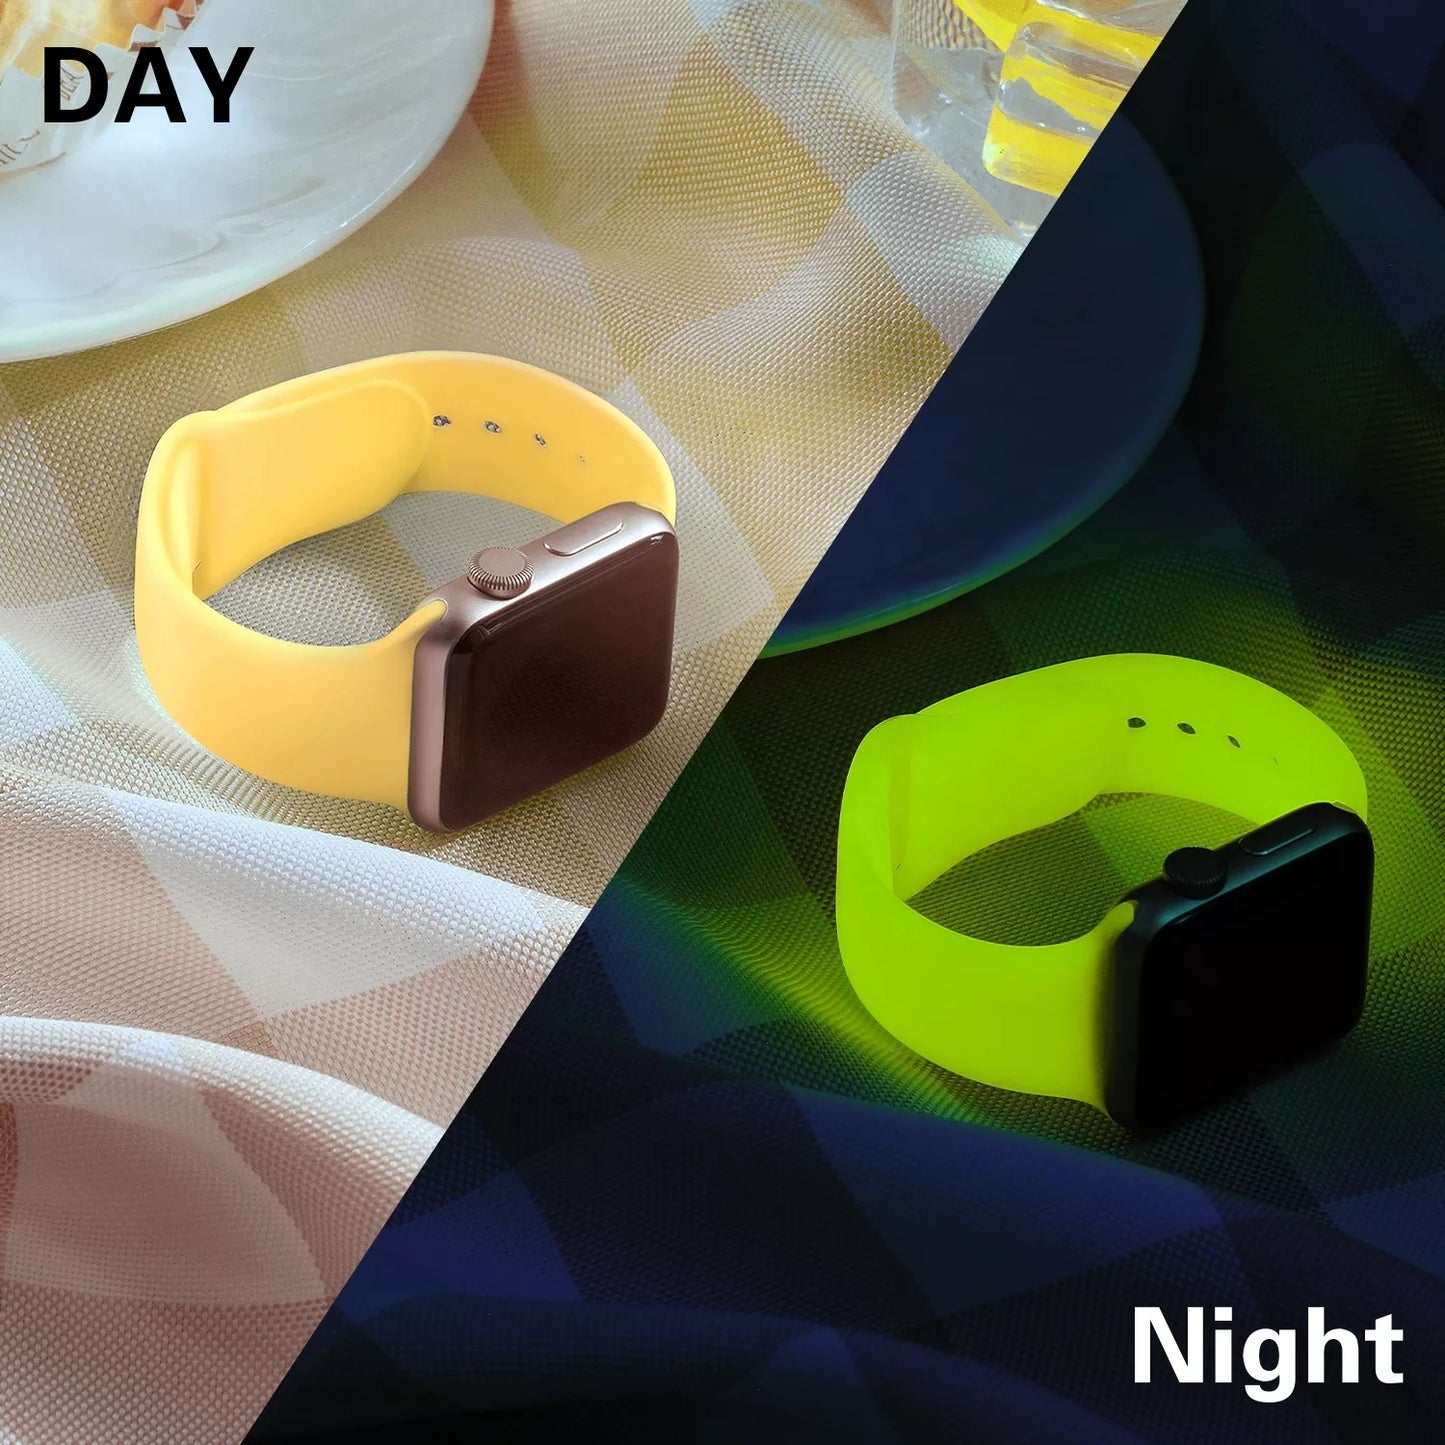 Glow in dark Luminous Band Bracelet for Apple Watch